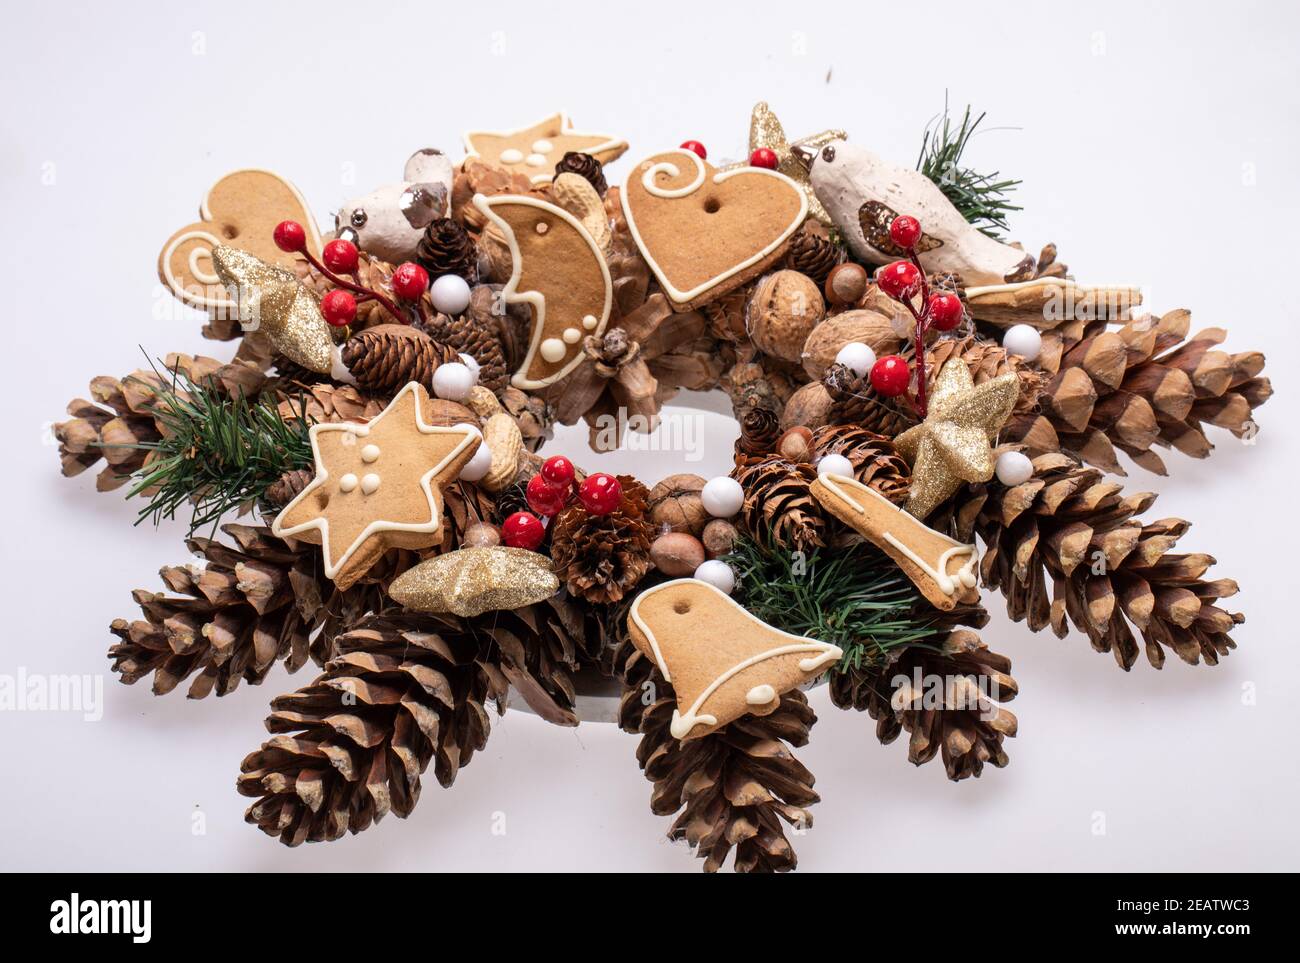 Adornos navideños con conos de pino, nueces y galletas de Navidad hechas a mano Foto de stock